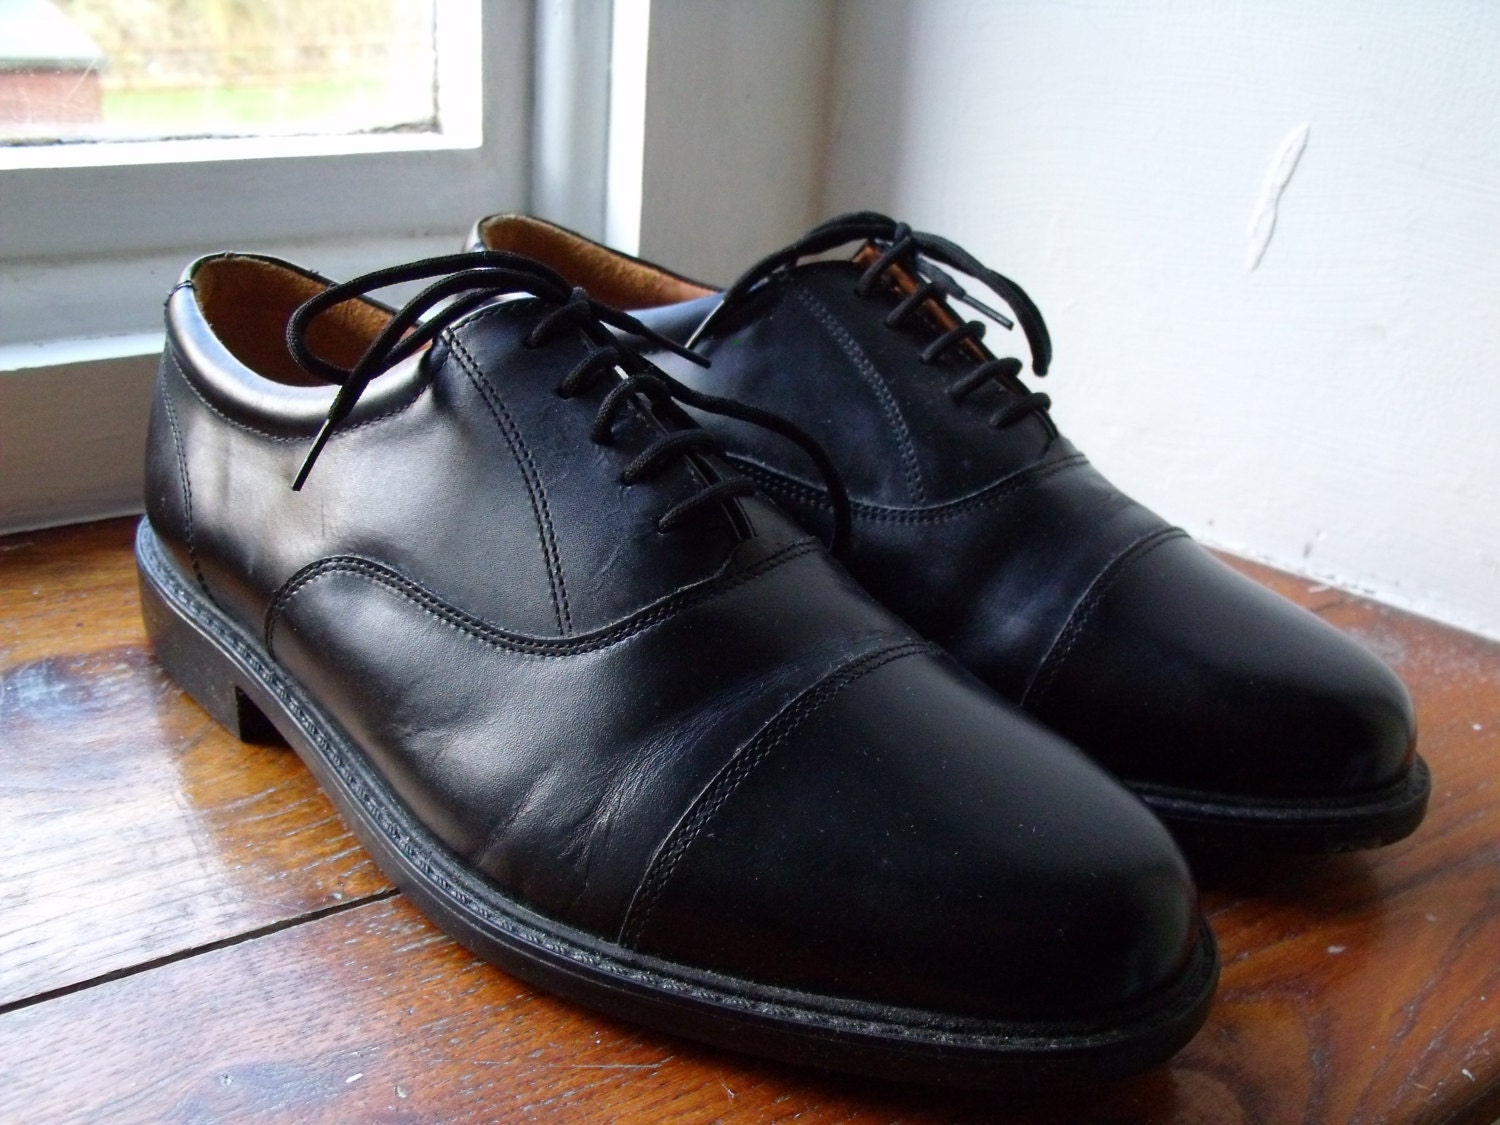 Vintage UK 8 US 9 EU 42.5 black leather lace up shoes. Extra